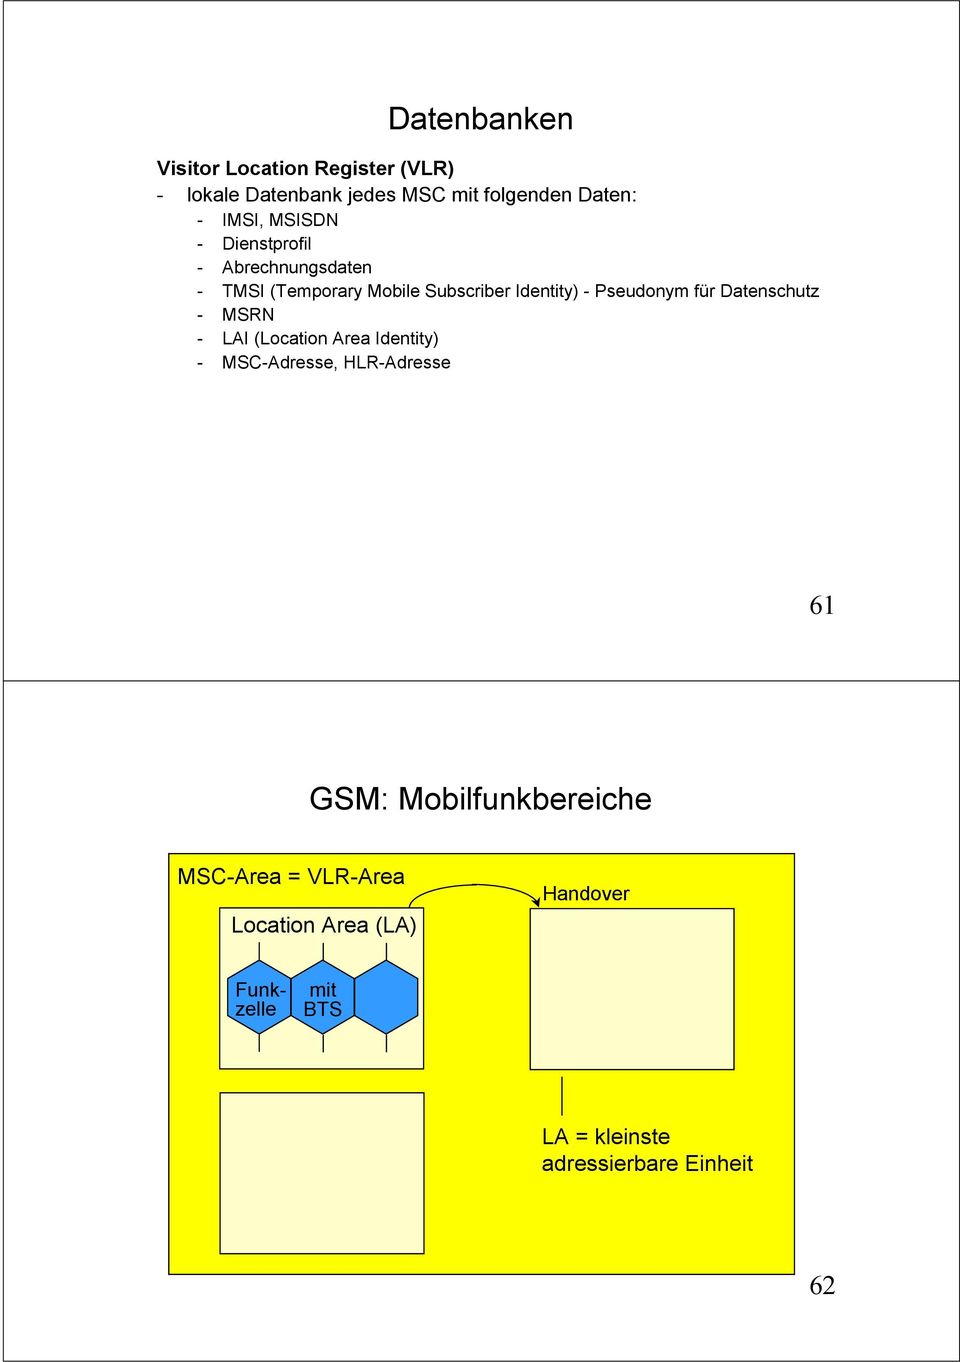 Datenschutz - MSRN - LAI (Location Area Identity) - MSC-Adresse, HLR-Adresse 61 GSM: Mobilfunkbereiche